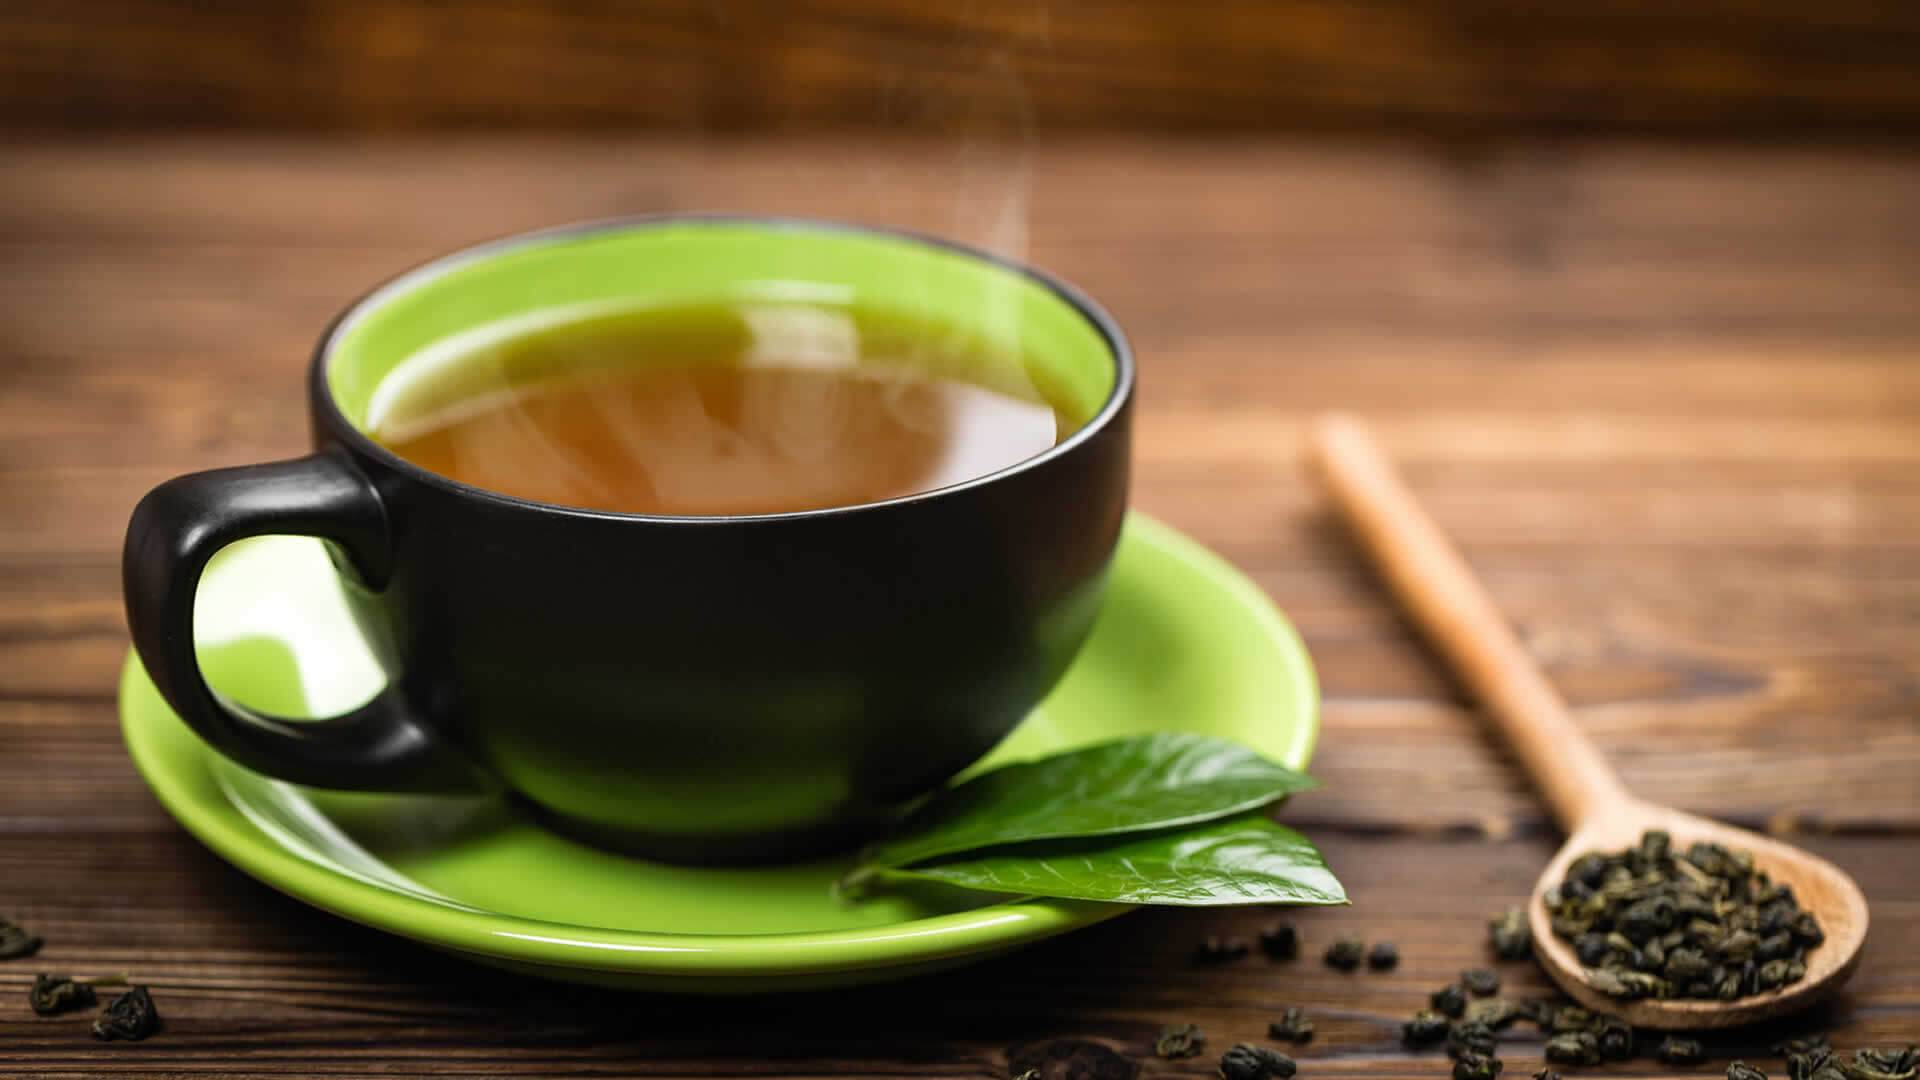 Содержание кофеина в чае и кофе: таблицы